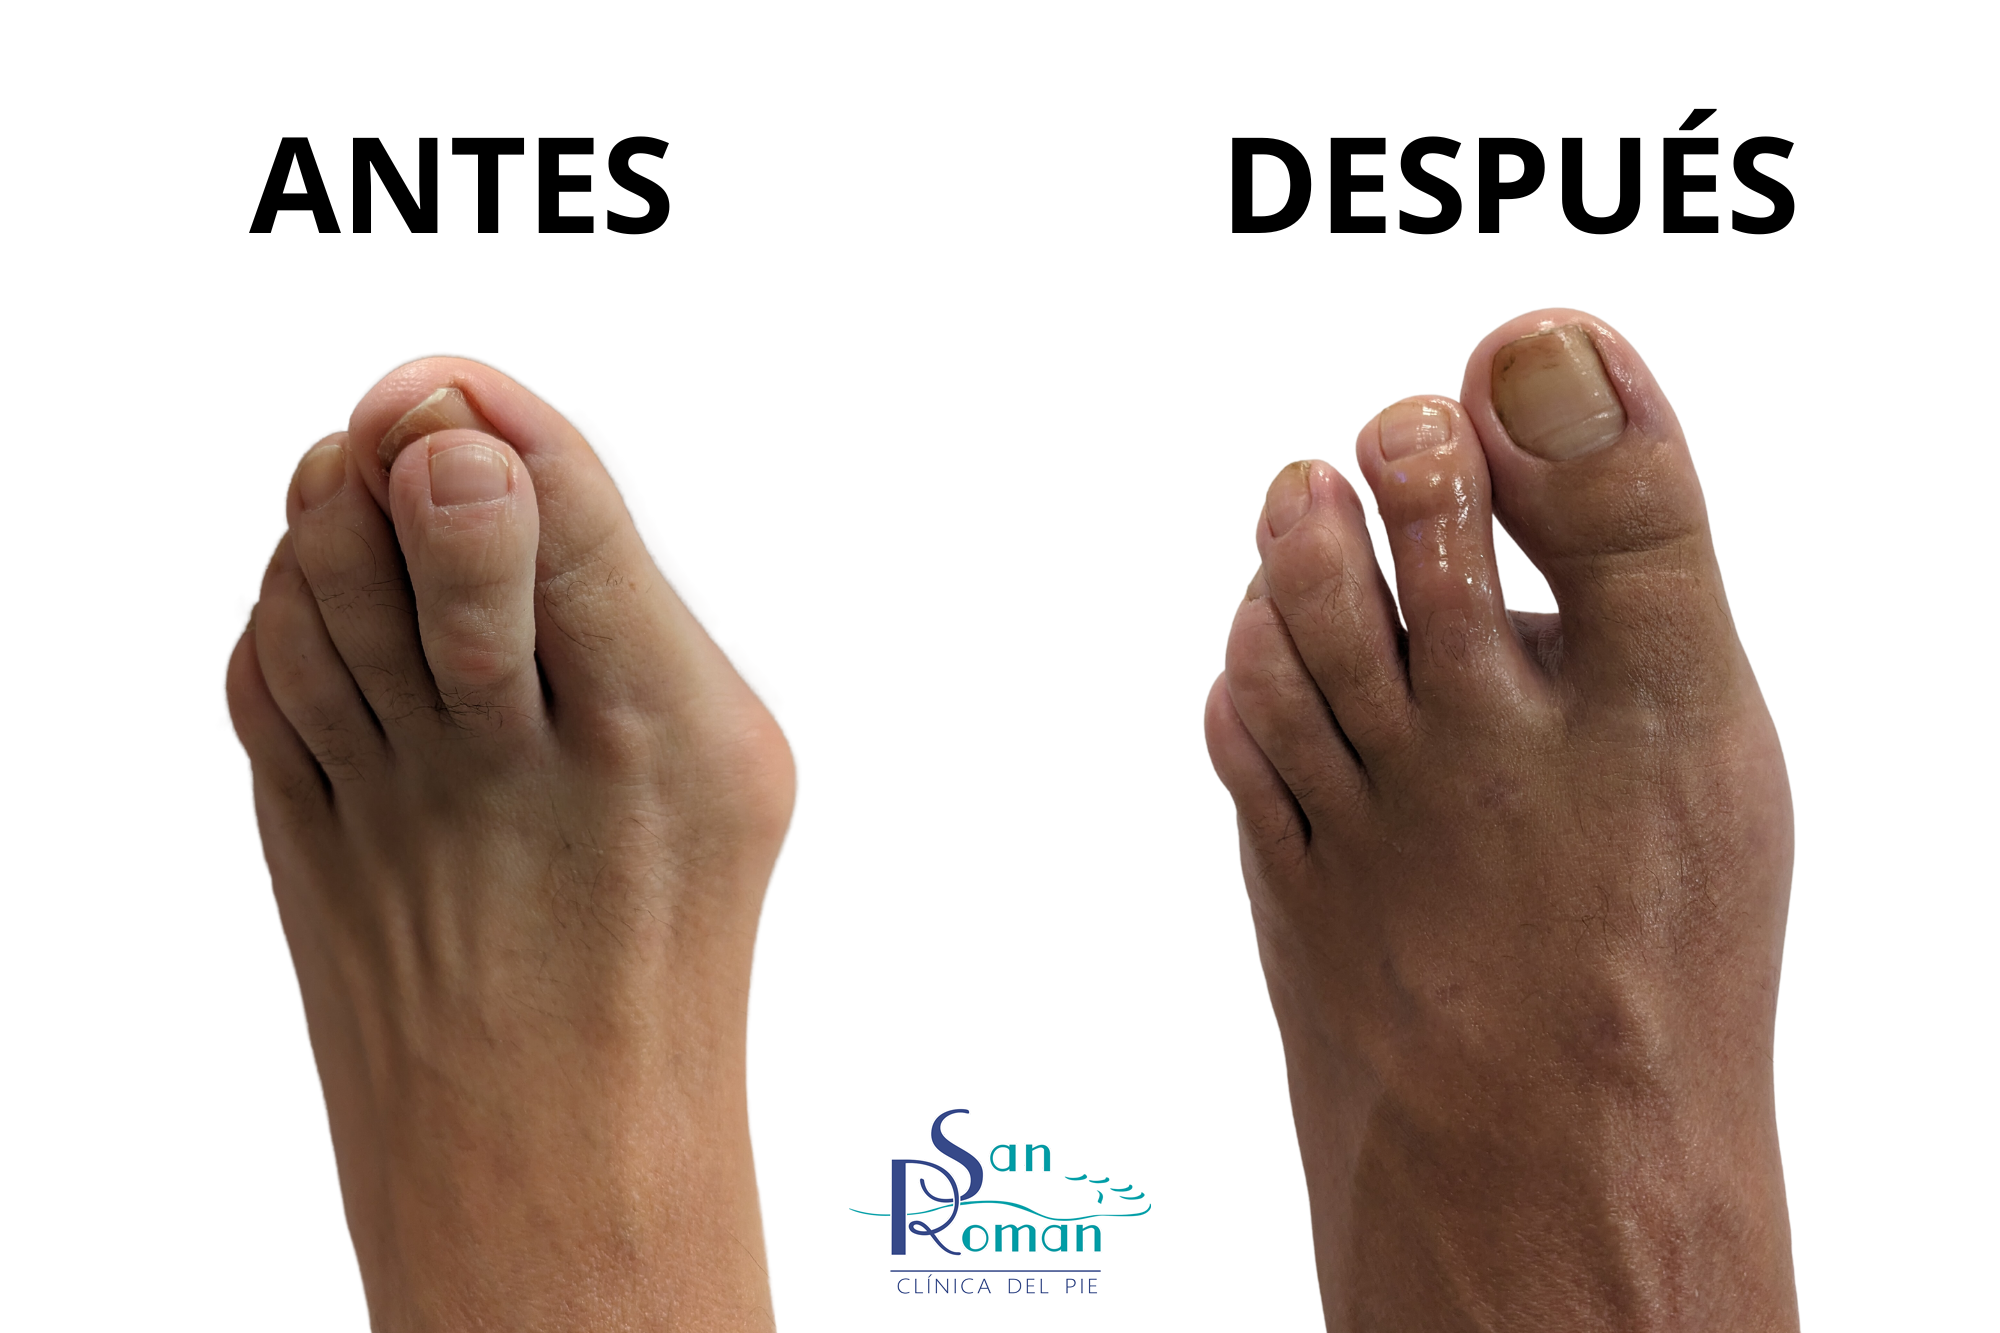 deformidades del pie antes y después de la cirugía mínima invasiva